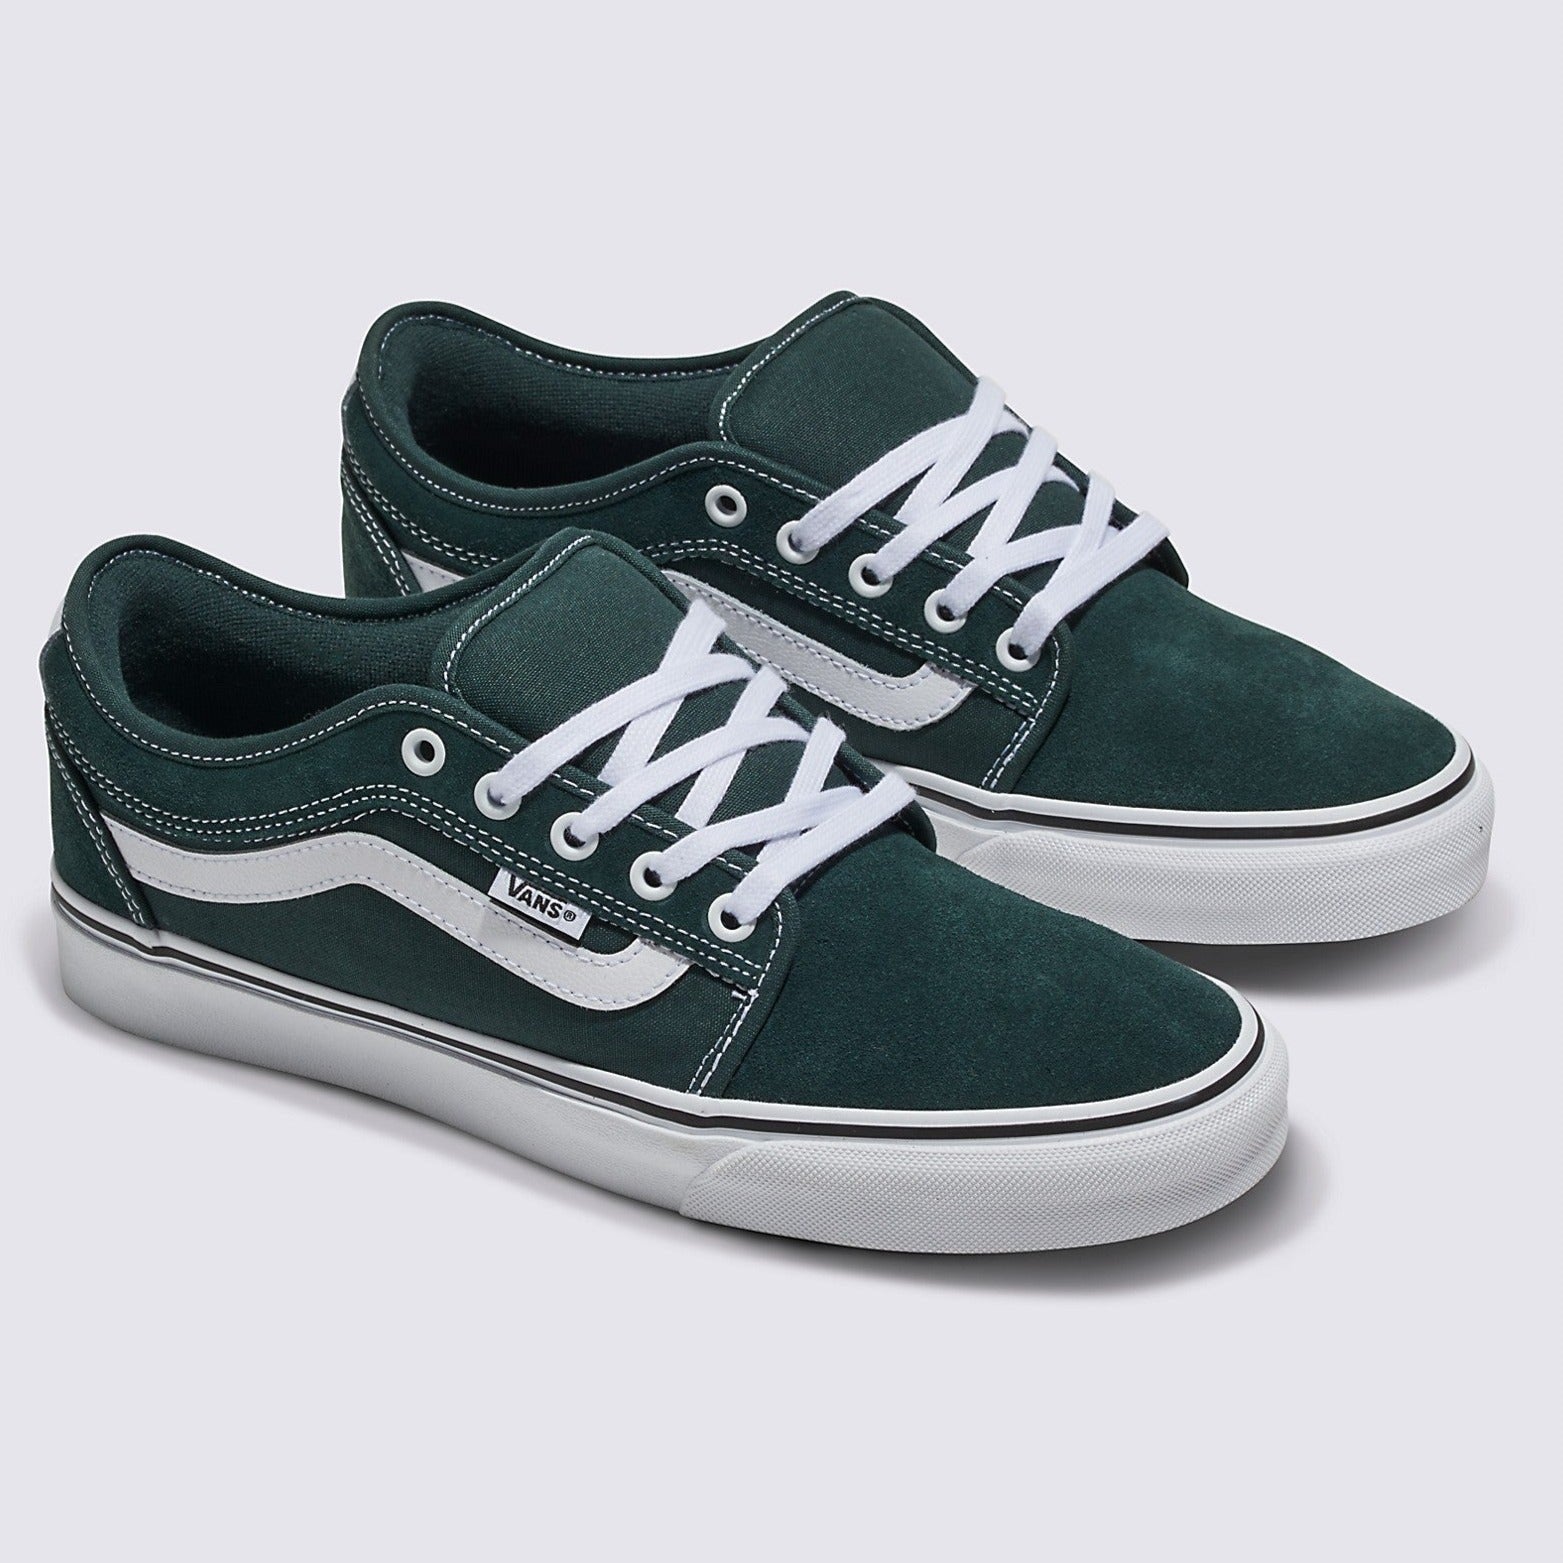 Green Gables Chukka Low Sidestripe Vans Skate Shoe